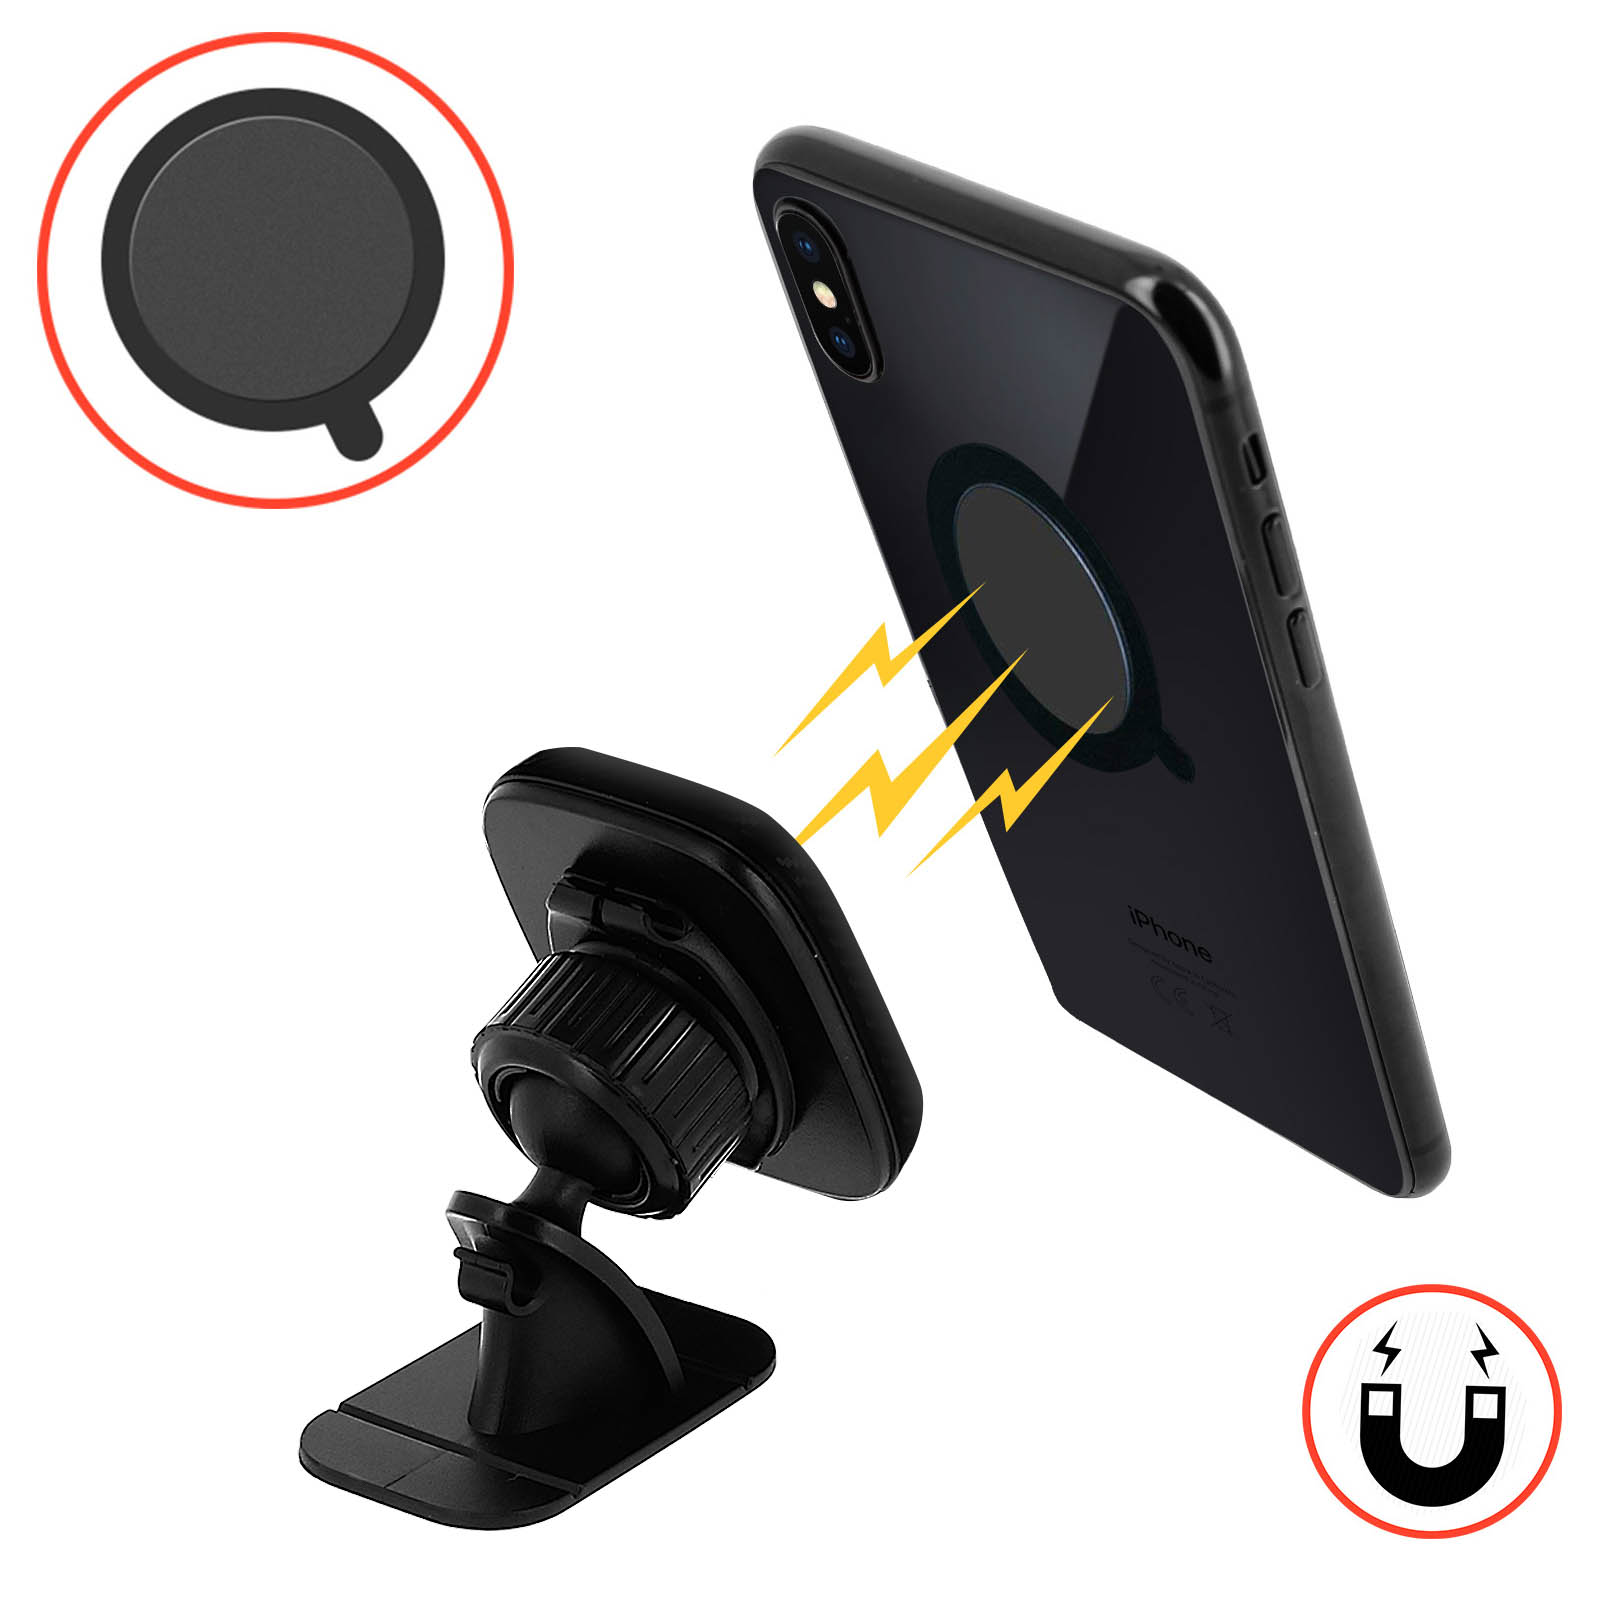 Support Voiture Magnétique et Rotatif à 360°, Fixation Tableau de bord Hoco  - Noir p. Smartphone et Petite Tablette - Français